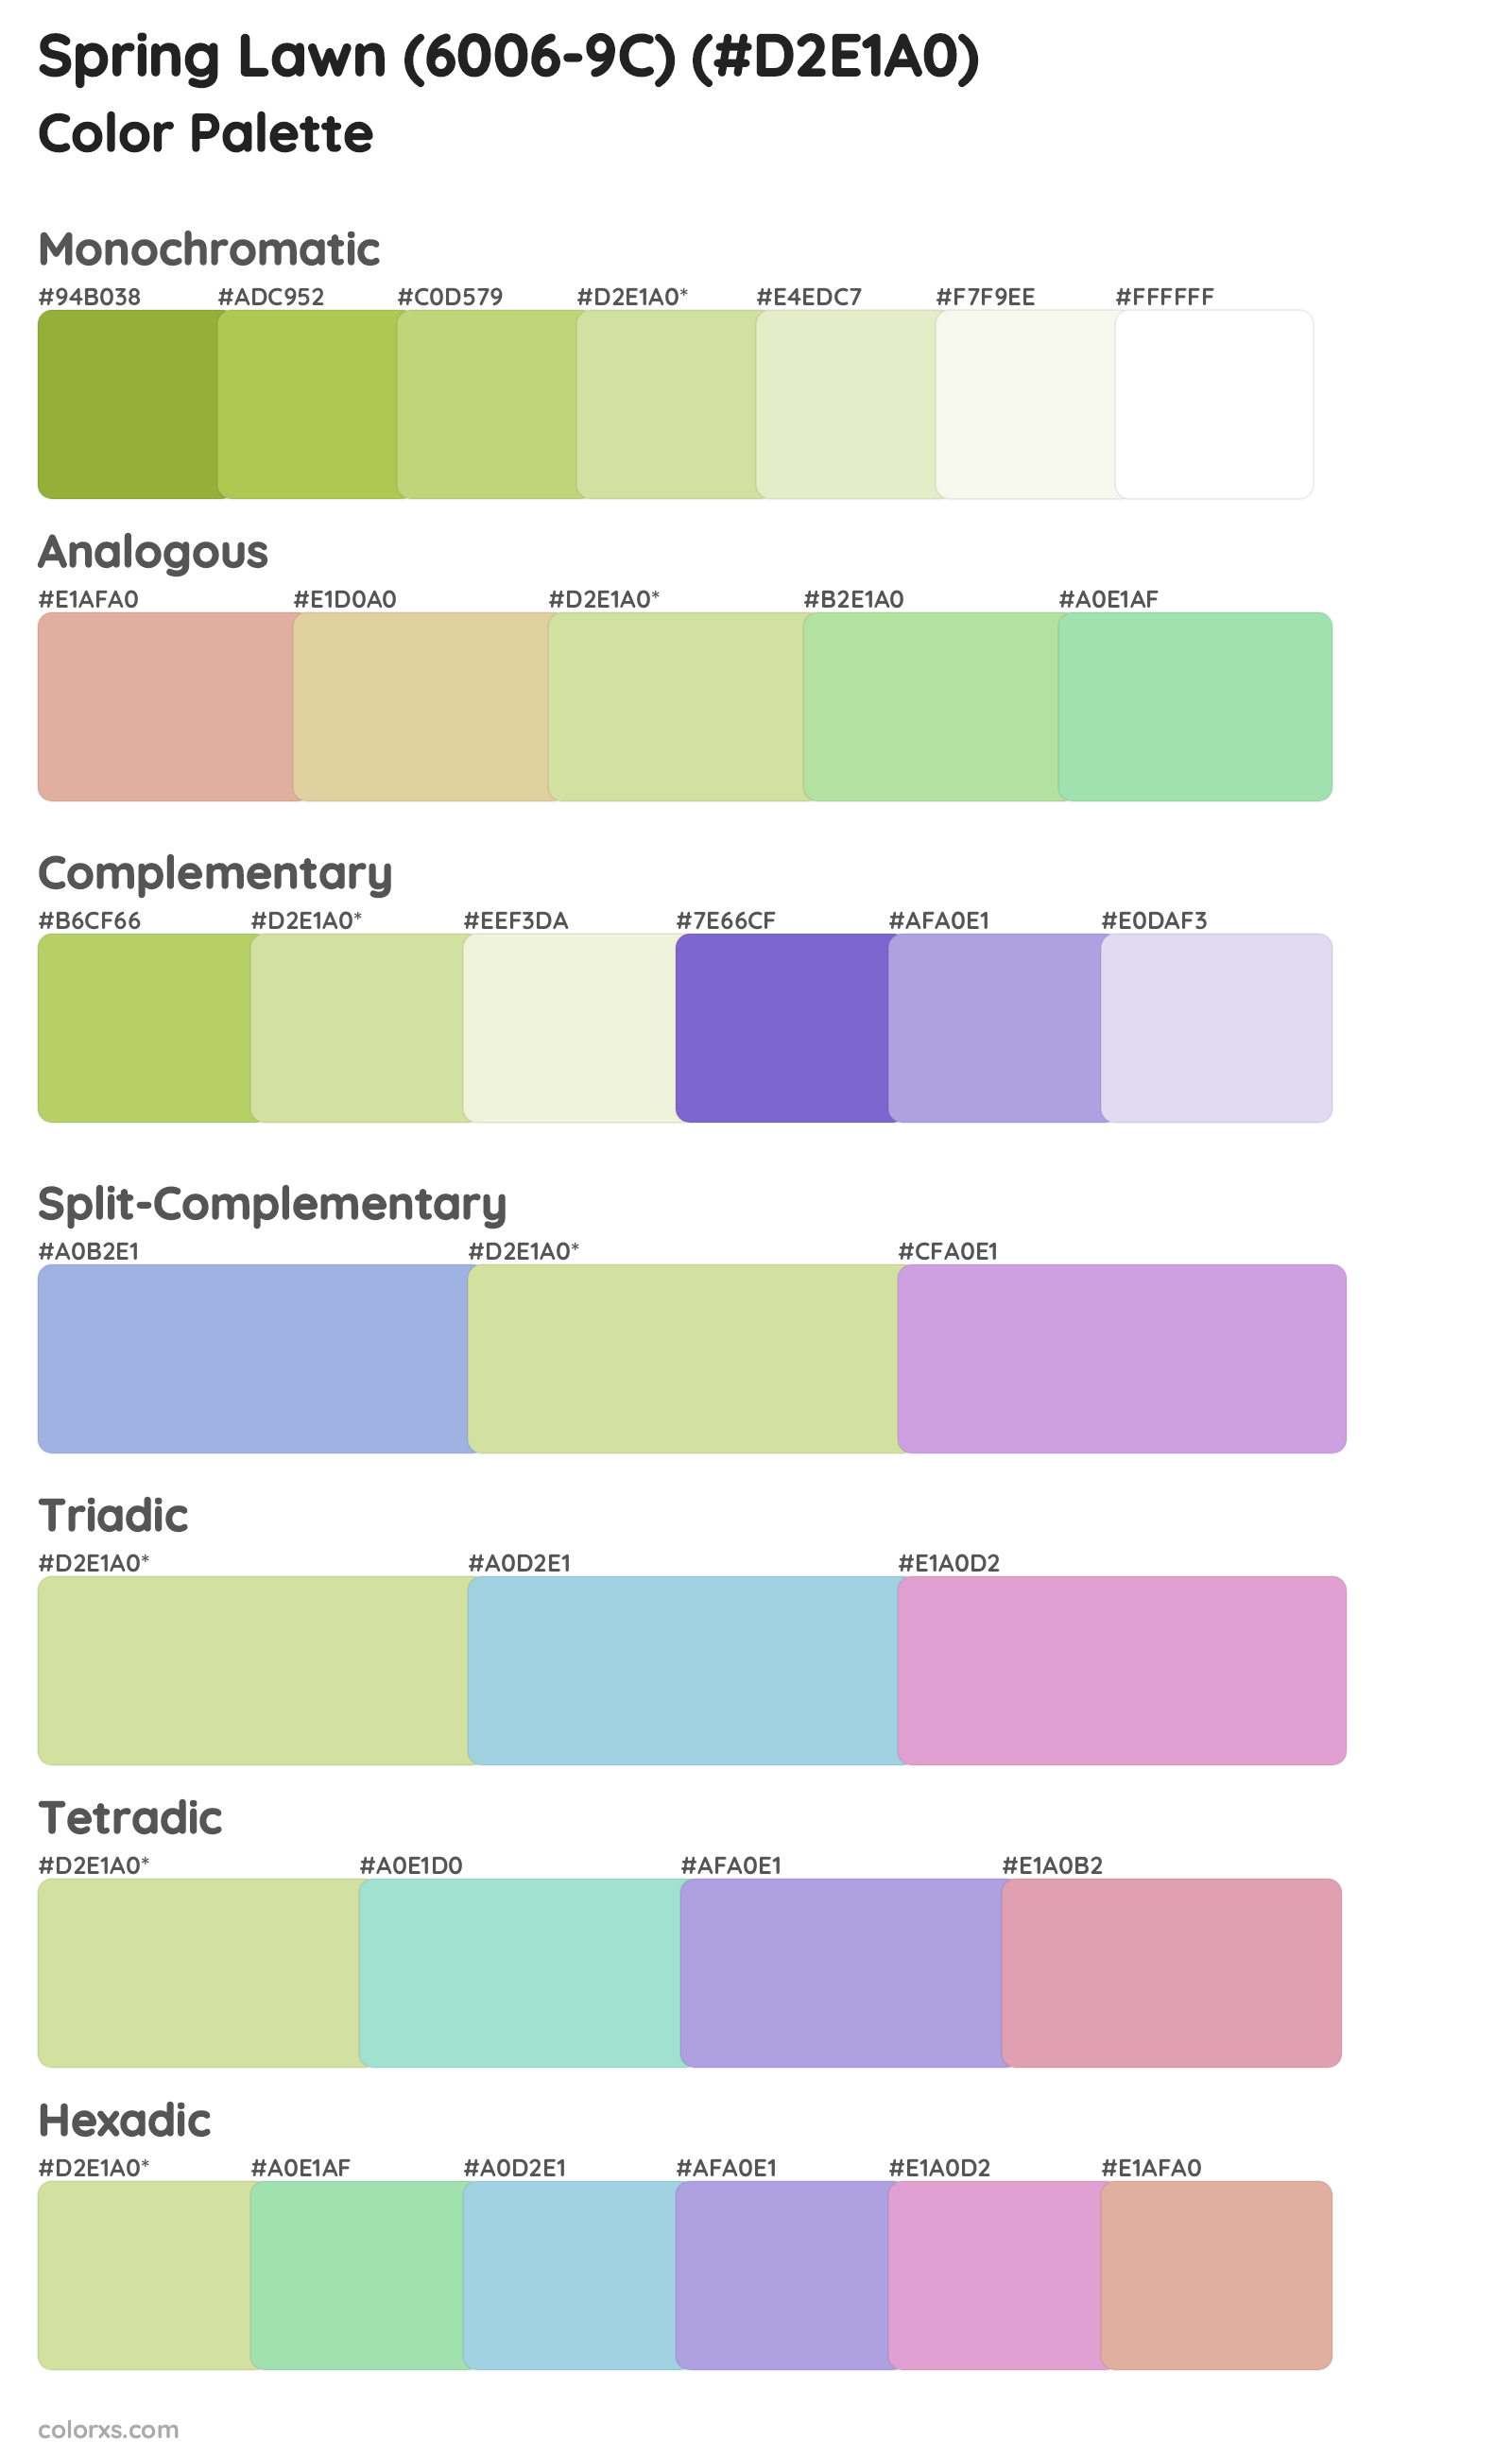 Spring Lawn (6006-9C) Color Scheme Palettes